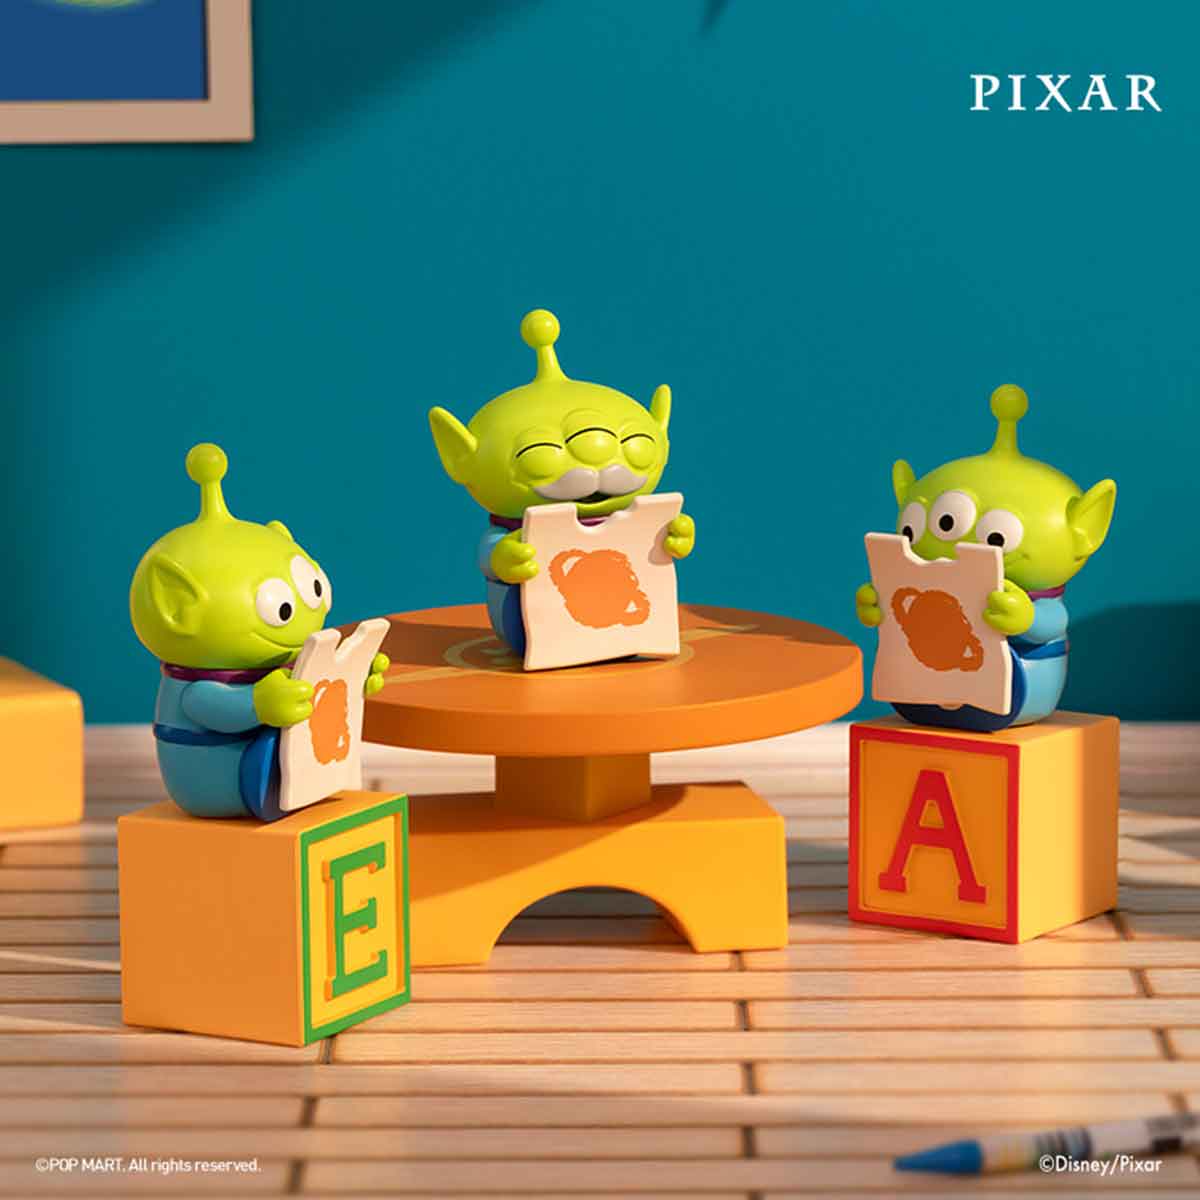 POP MART Pixar Alien Party Games Series Scene Sets-Single Box (Random)-Pop Mart-Ace Cards & Collectibles